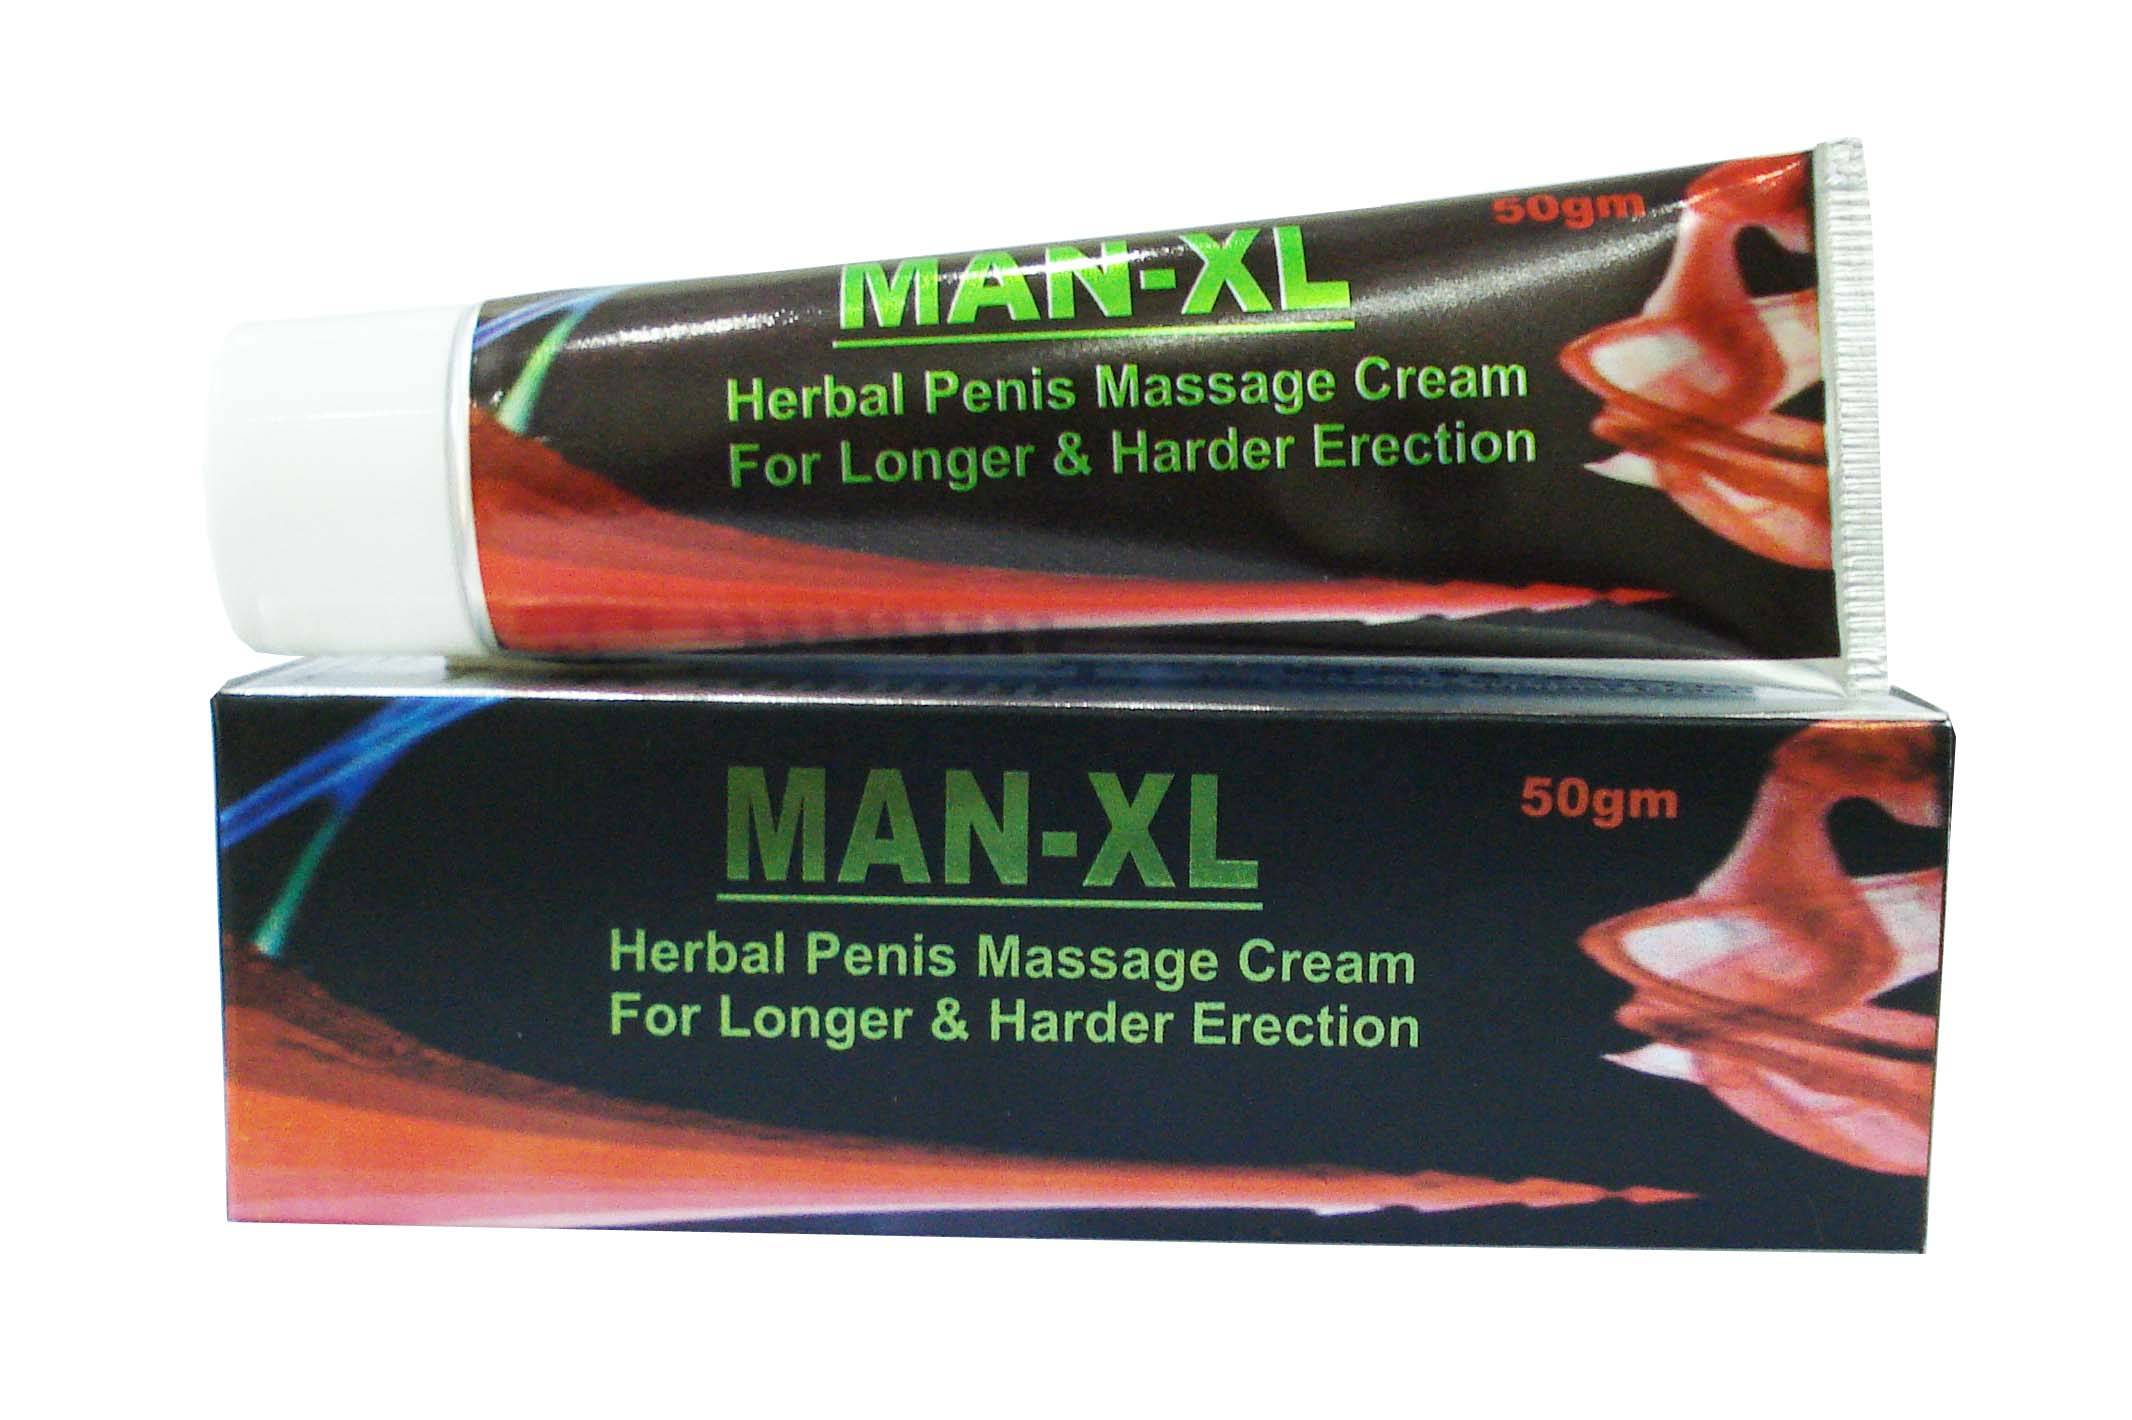 Penimax Penis Massage Cream